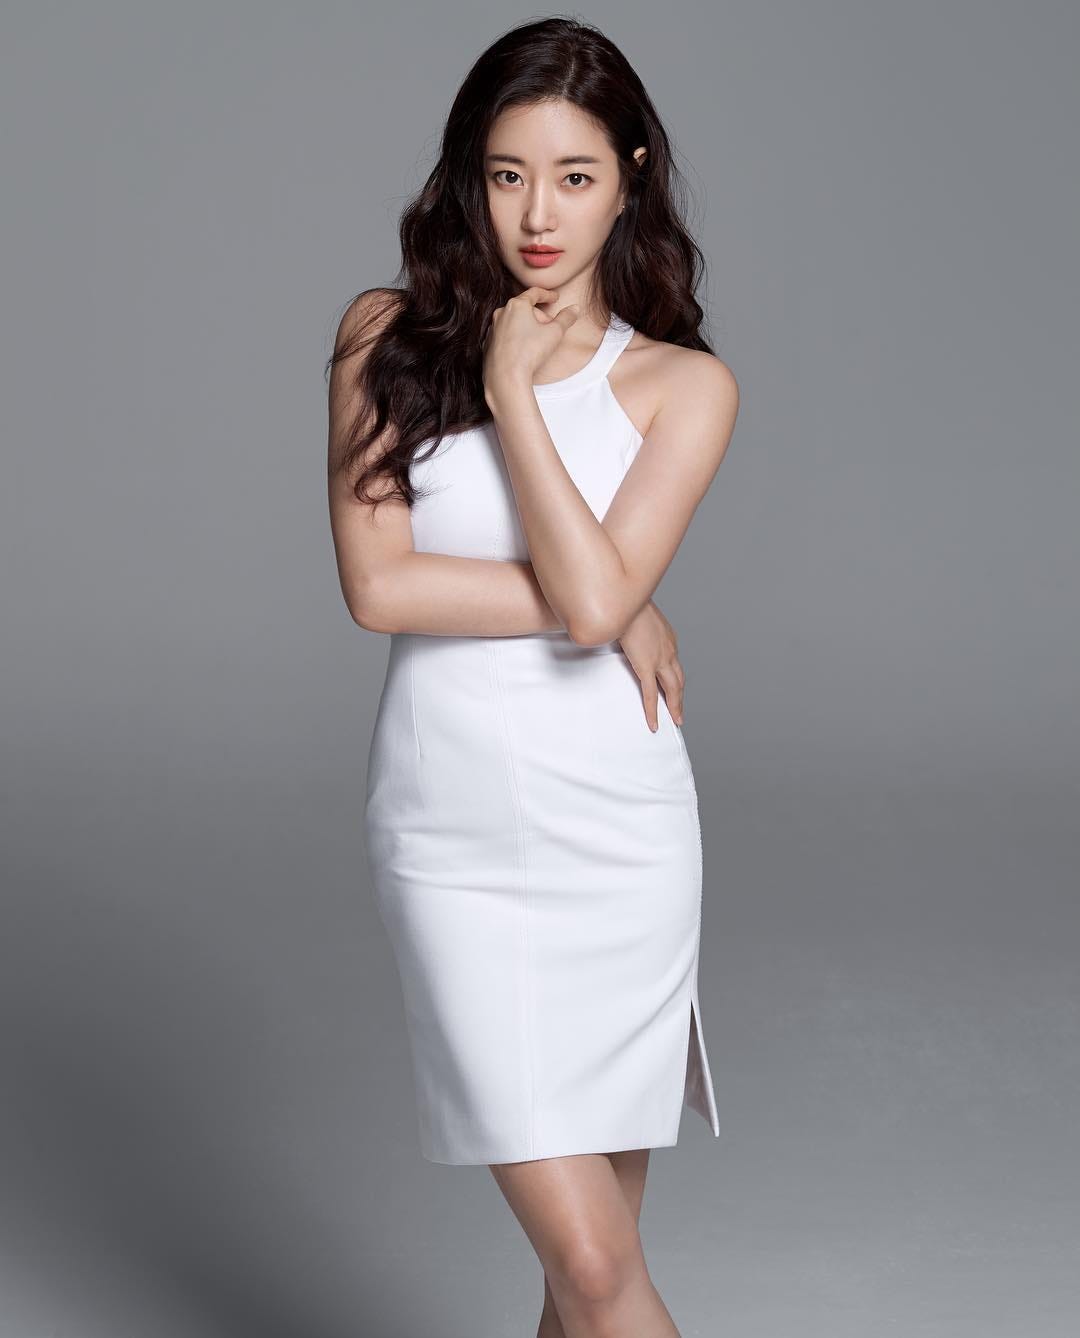 Celebplus selected actress Kim Sarang as an exclusive model.